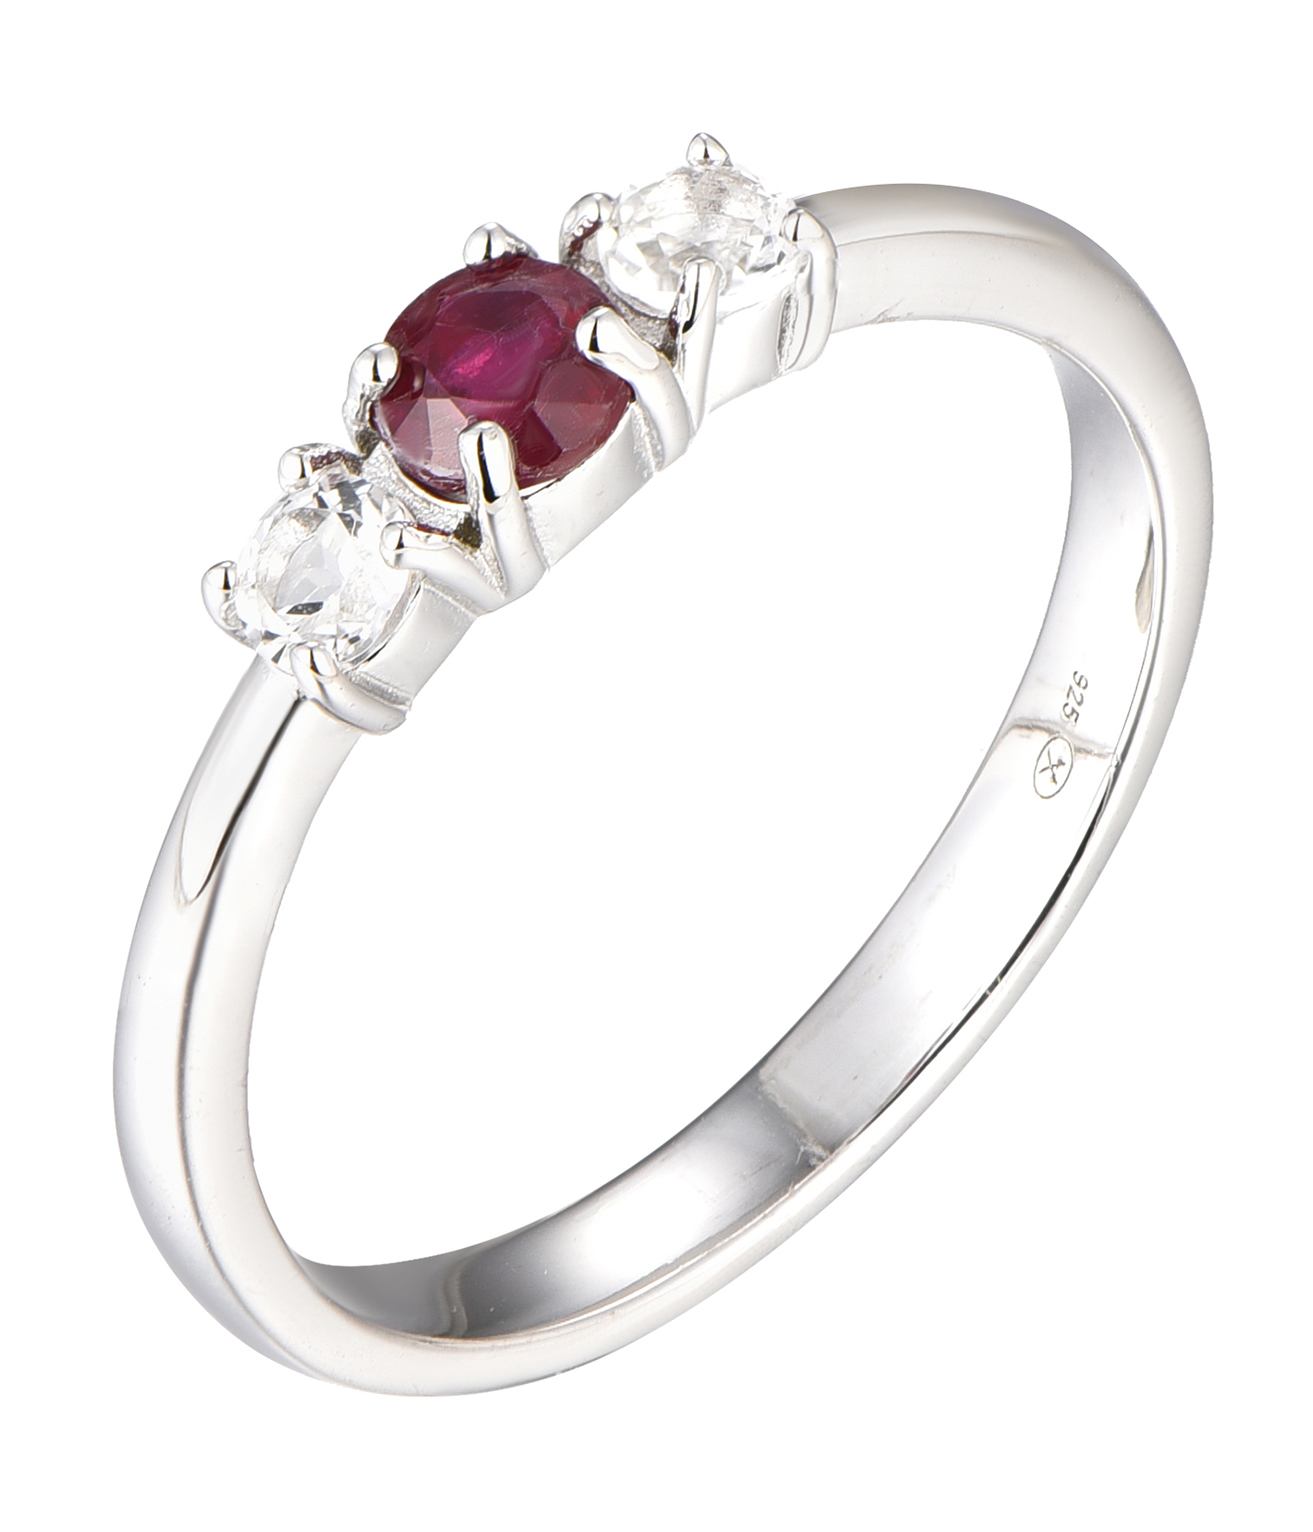 Brilio Silver Blýštivý stříbrný prsten s rubínem Precious Stone SR09003C 52 mm